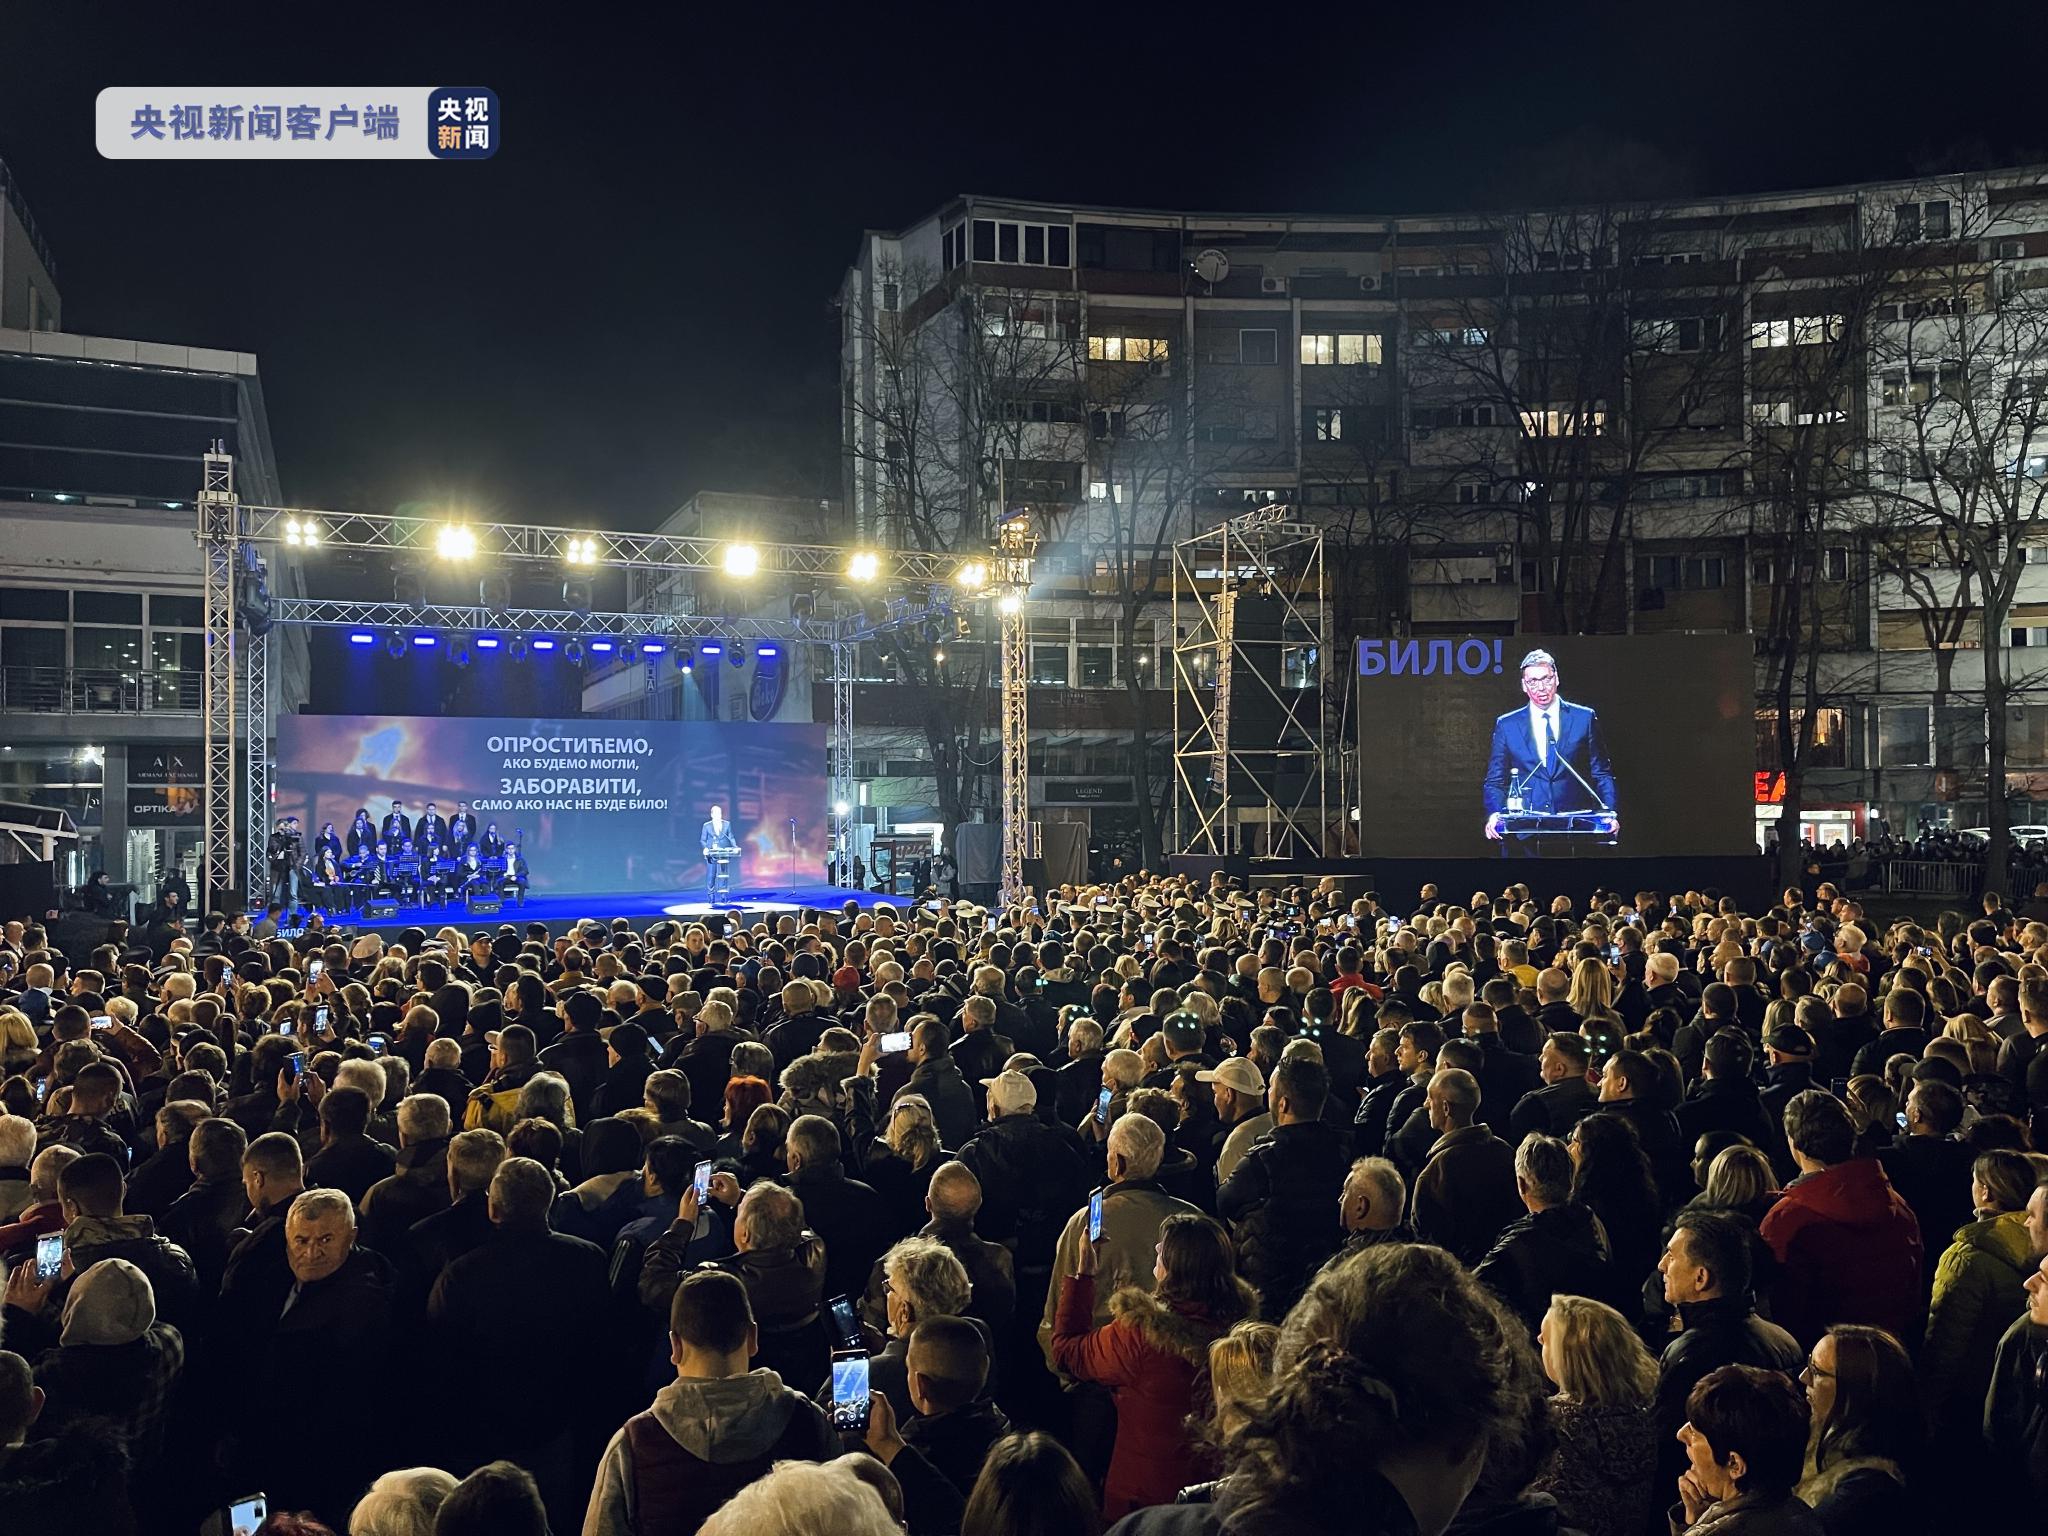 △活动举办地塞尔维亚战士广场聚集了众多参加悼念活动的民众